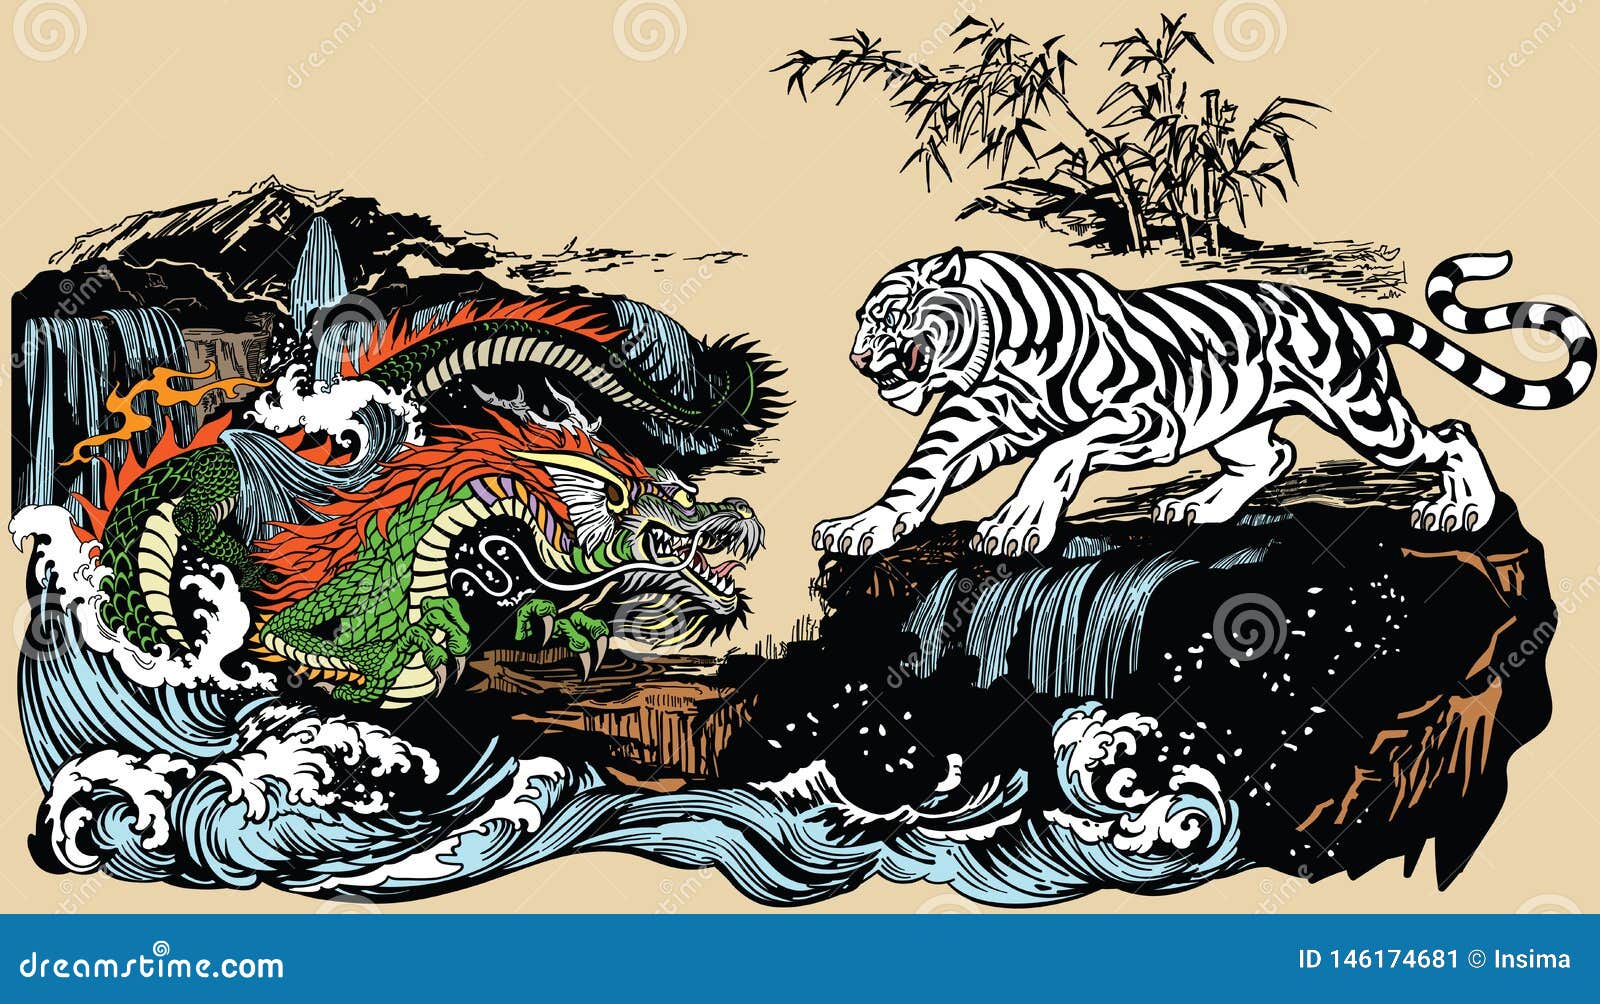 Год быка дракона. Тигр и дракон. Тигр и дракон картинки. Картина дракон и тигр. Китайские драконы сражаются с тигром.